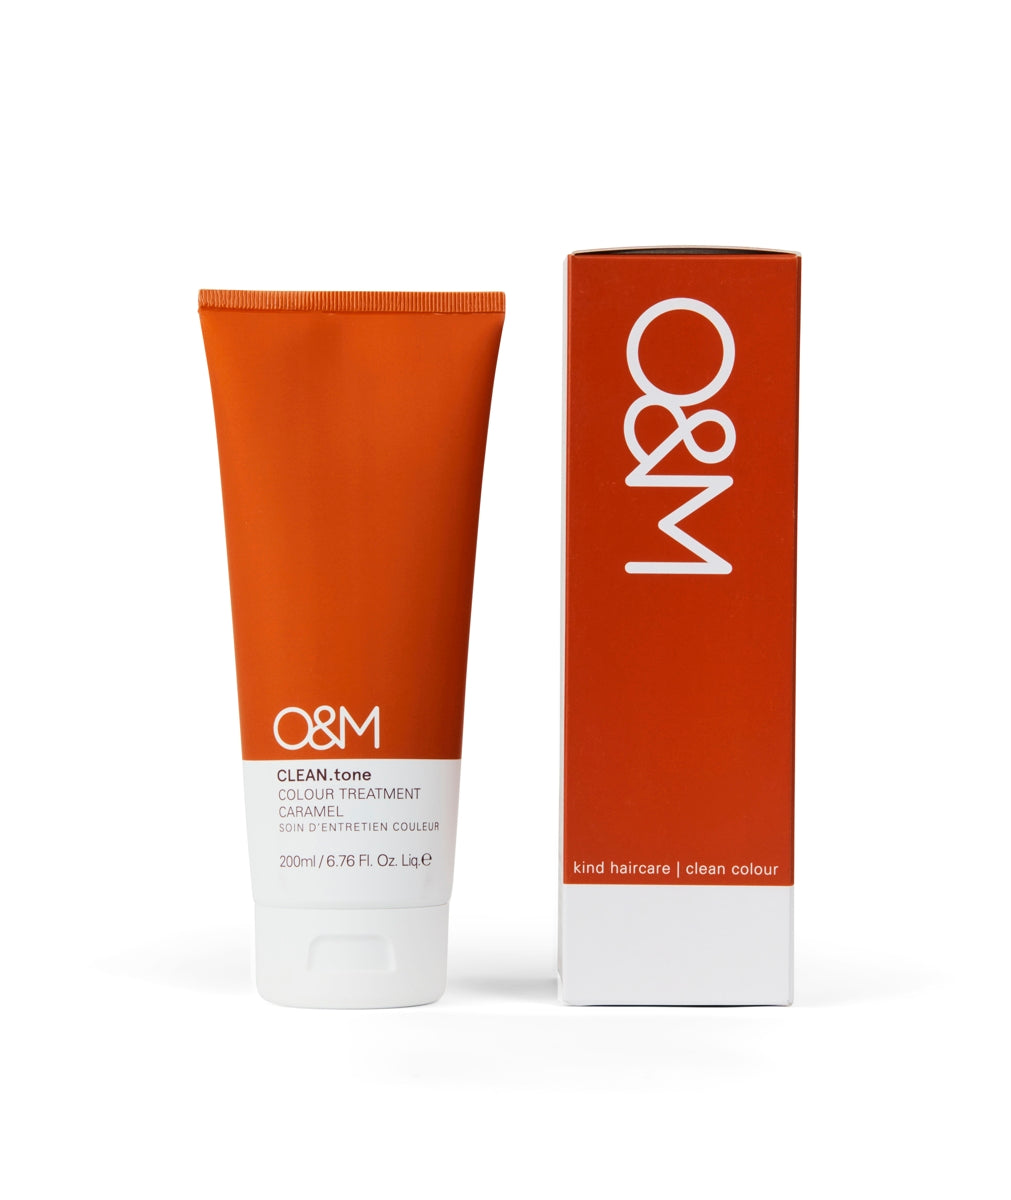 O&M CLEAN.tone Colour Treatment CARAMEL 200ml